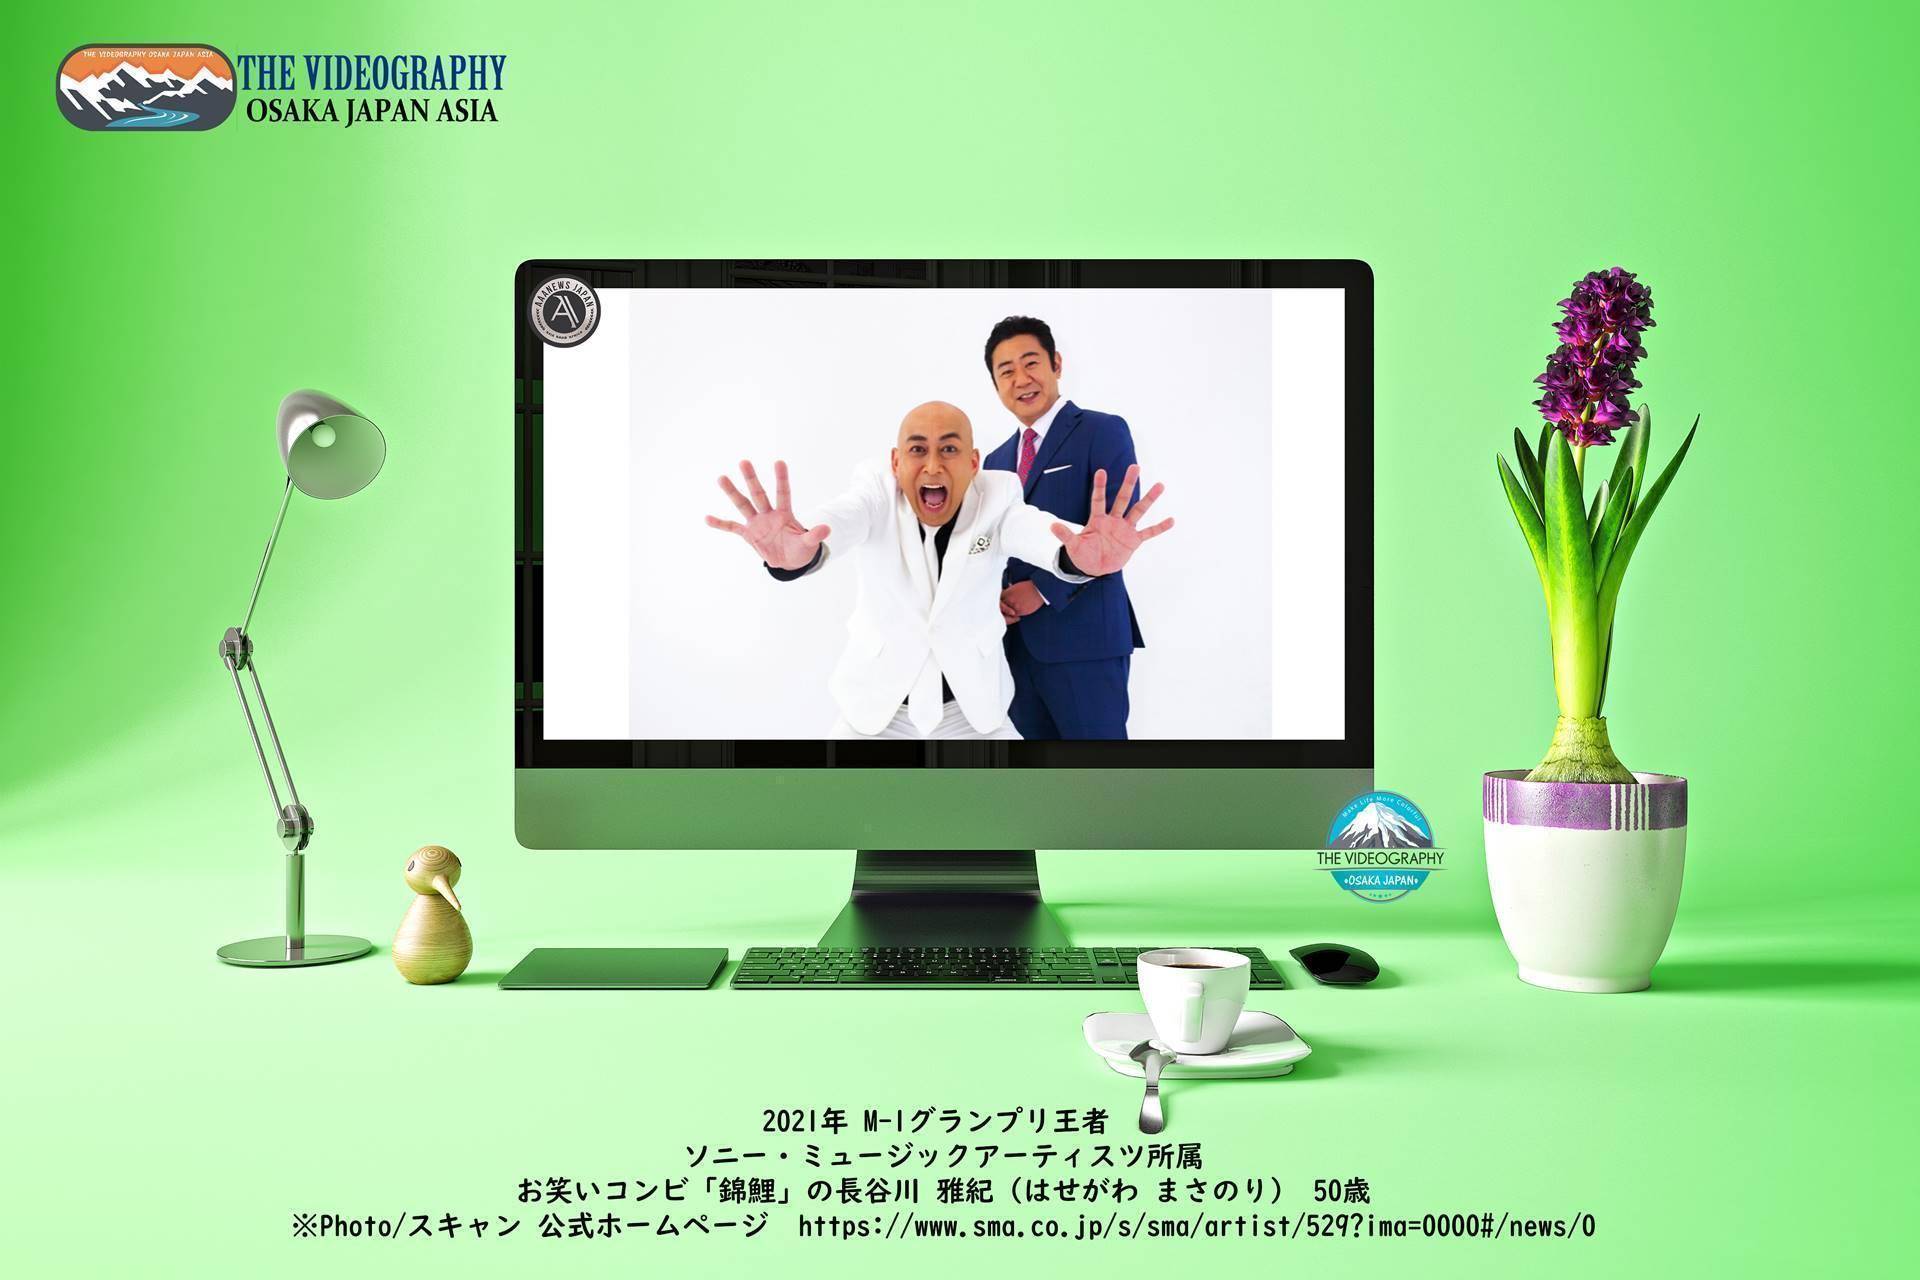 2030年の日本の自画像はお笑いコンビ「錦鯉」の長谷川雅紀さん。 2030年の日本の平均年齢は50歳。 2021年のM-1グランプリ王者 ソニー・ミュージックアーティスツ所属のお笑いコンビ「錦鯉」の長谷川 雅紀（はせがわ まさのり）は50歳。